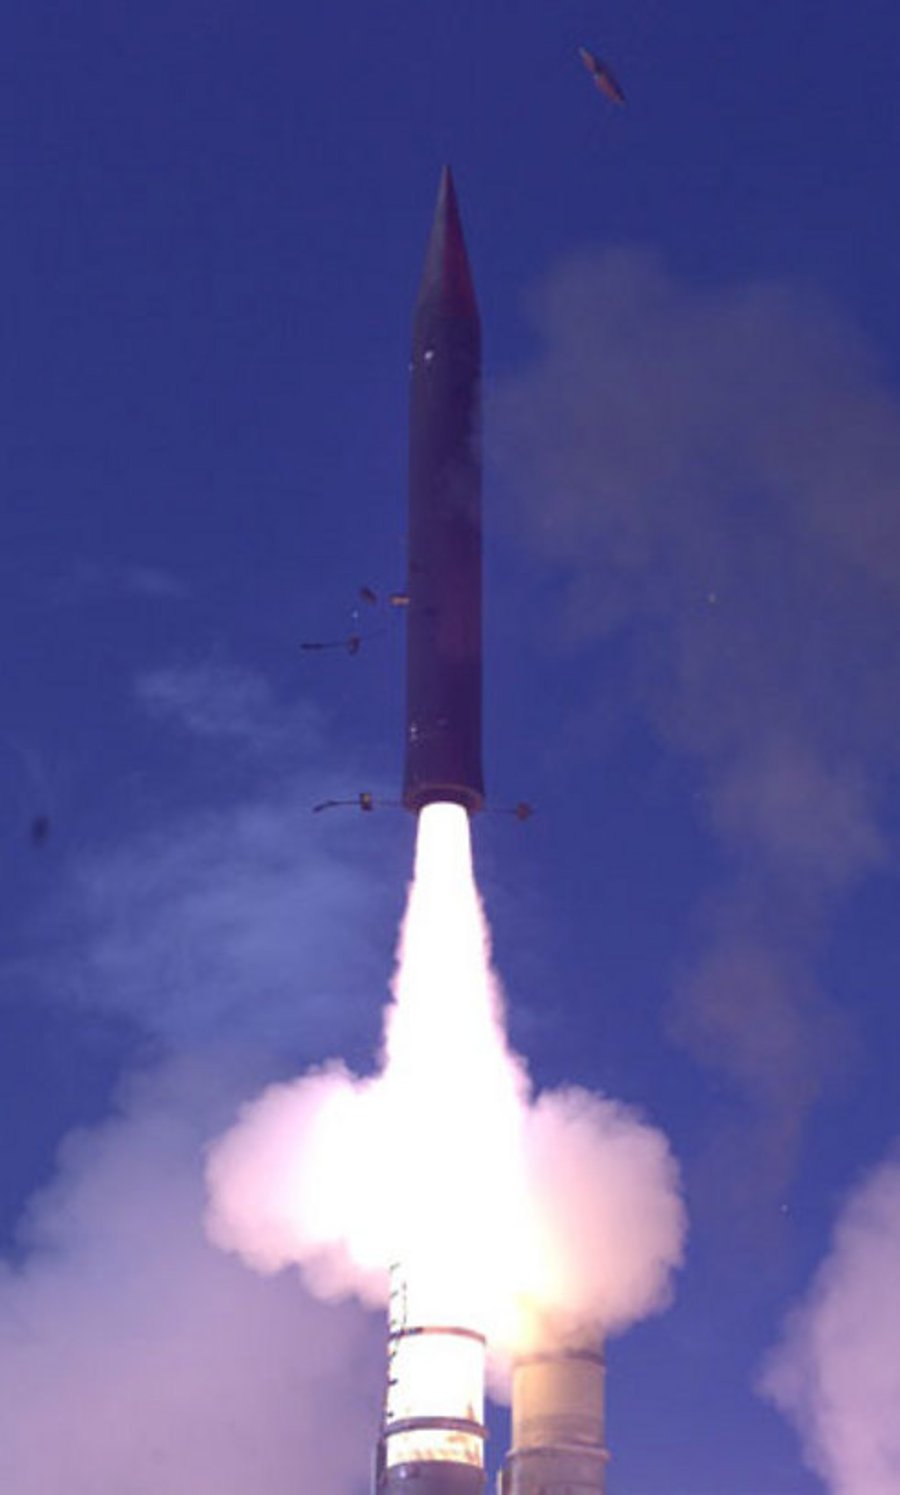 צפו: מערכת "חץ 3" מיירטת טיל מחוץ לאטמוספירה